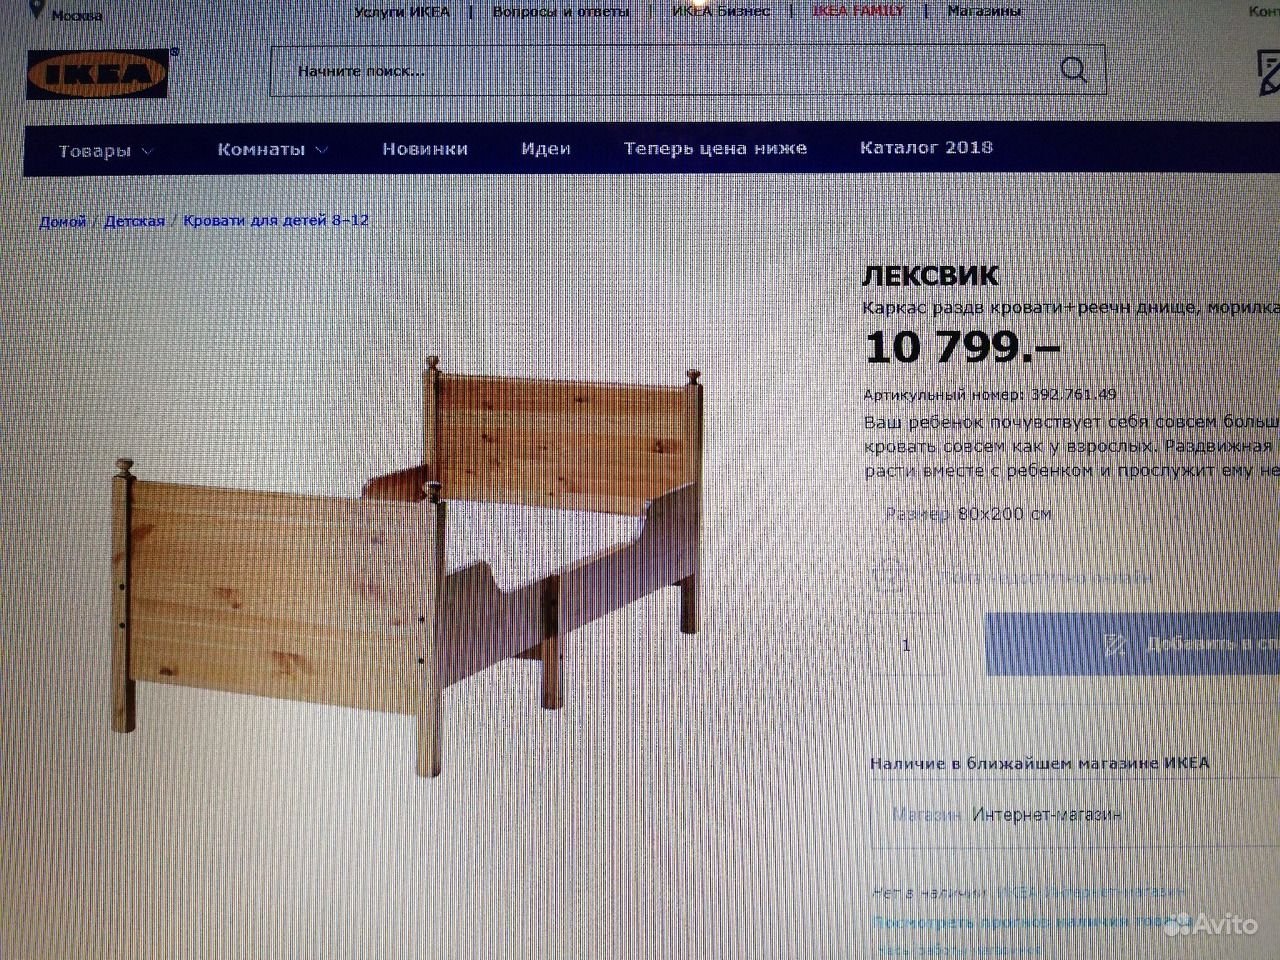 Знаменитая кровать из натурального дерева Leksvik / Лексвик от Икеа/ Ikea